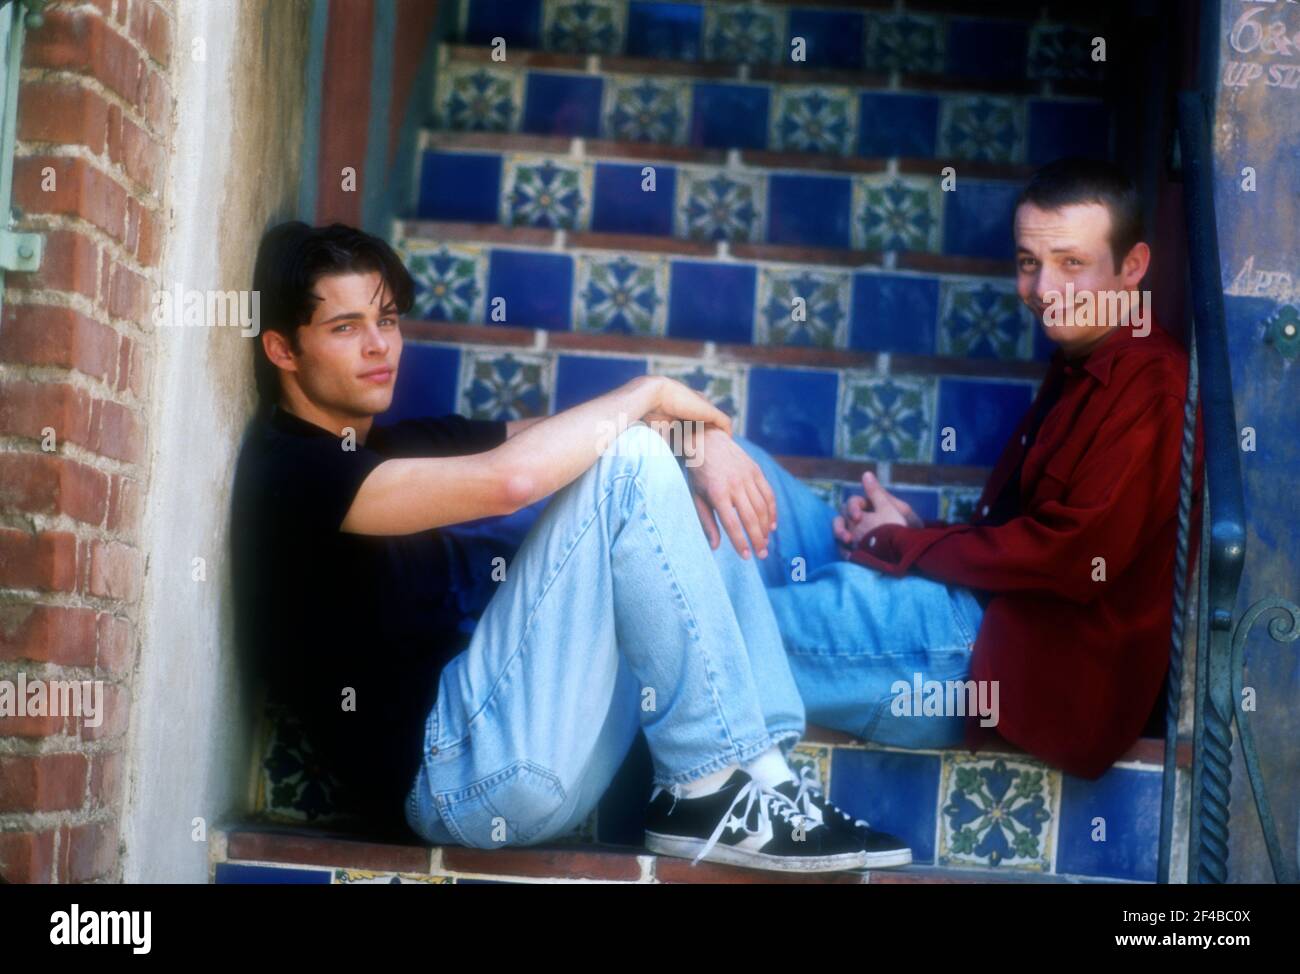 Los Angeles, Californie, États-Unis 15 mai 1996 (exclusivité) l'acteur James Marsden et le frère Robbie Marsden posent à une séance photo exclusive le 15 mai 1996 à Los Angeles, Californie, États-Unis. Photo par Barry King/Alay stock photo Banque D'Images